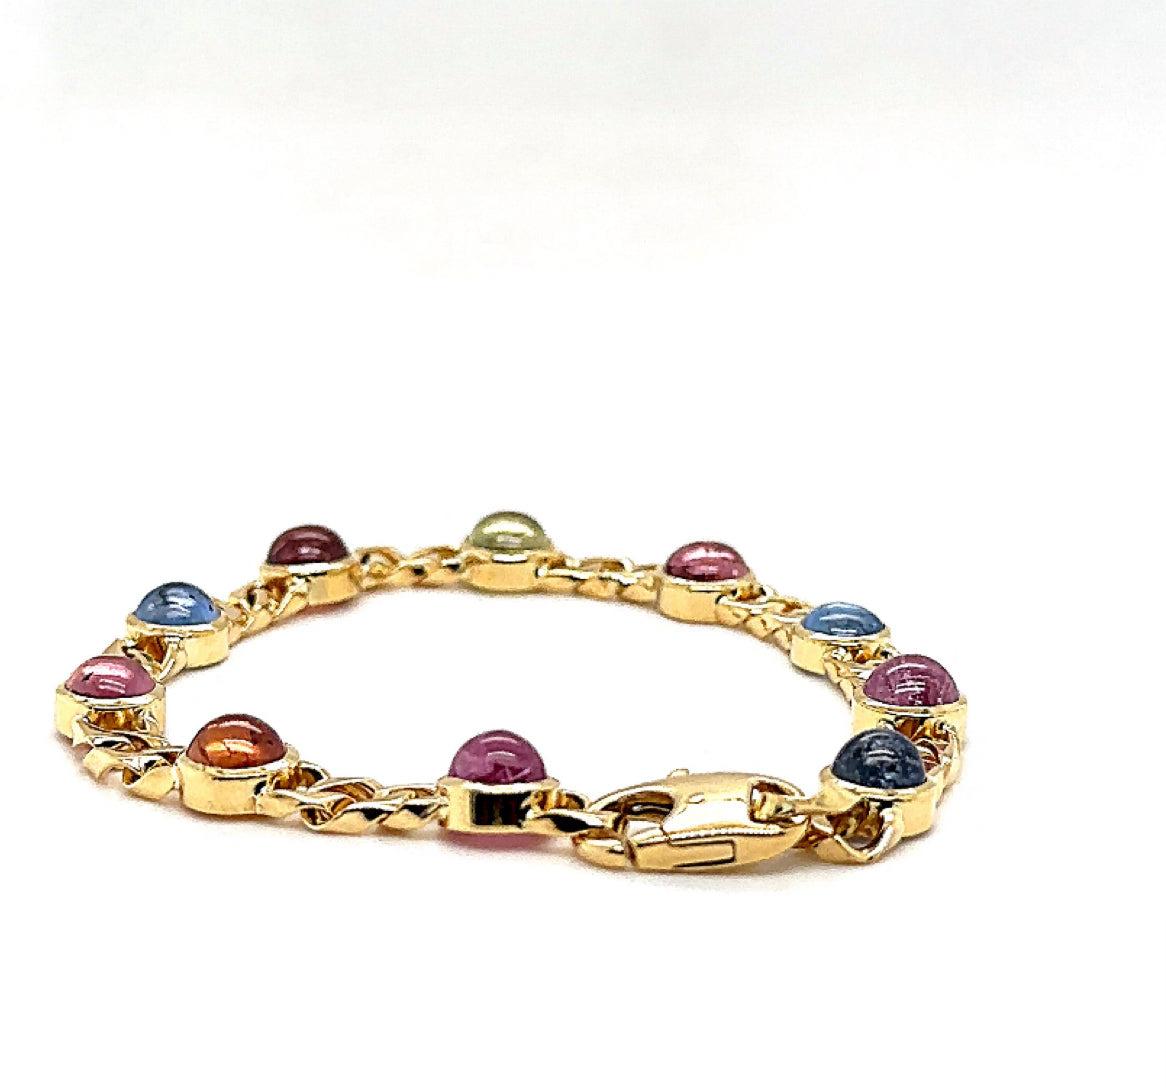 Edles Armband in 18 Karat Gelbgold mit bunt-leuchtenden Saphiren For Sale 7